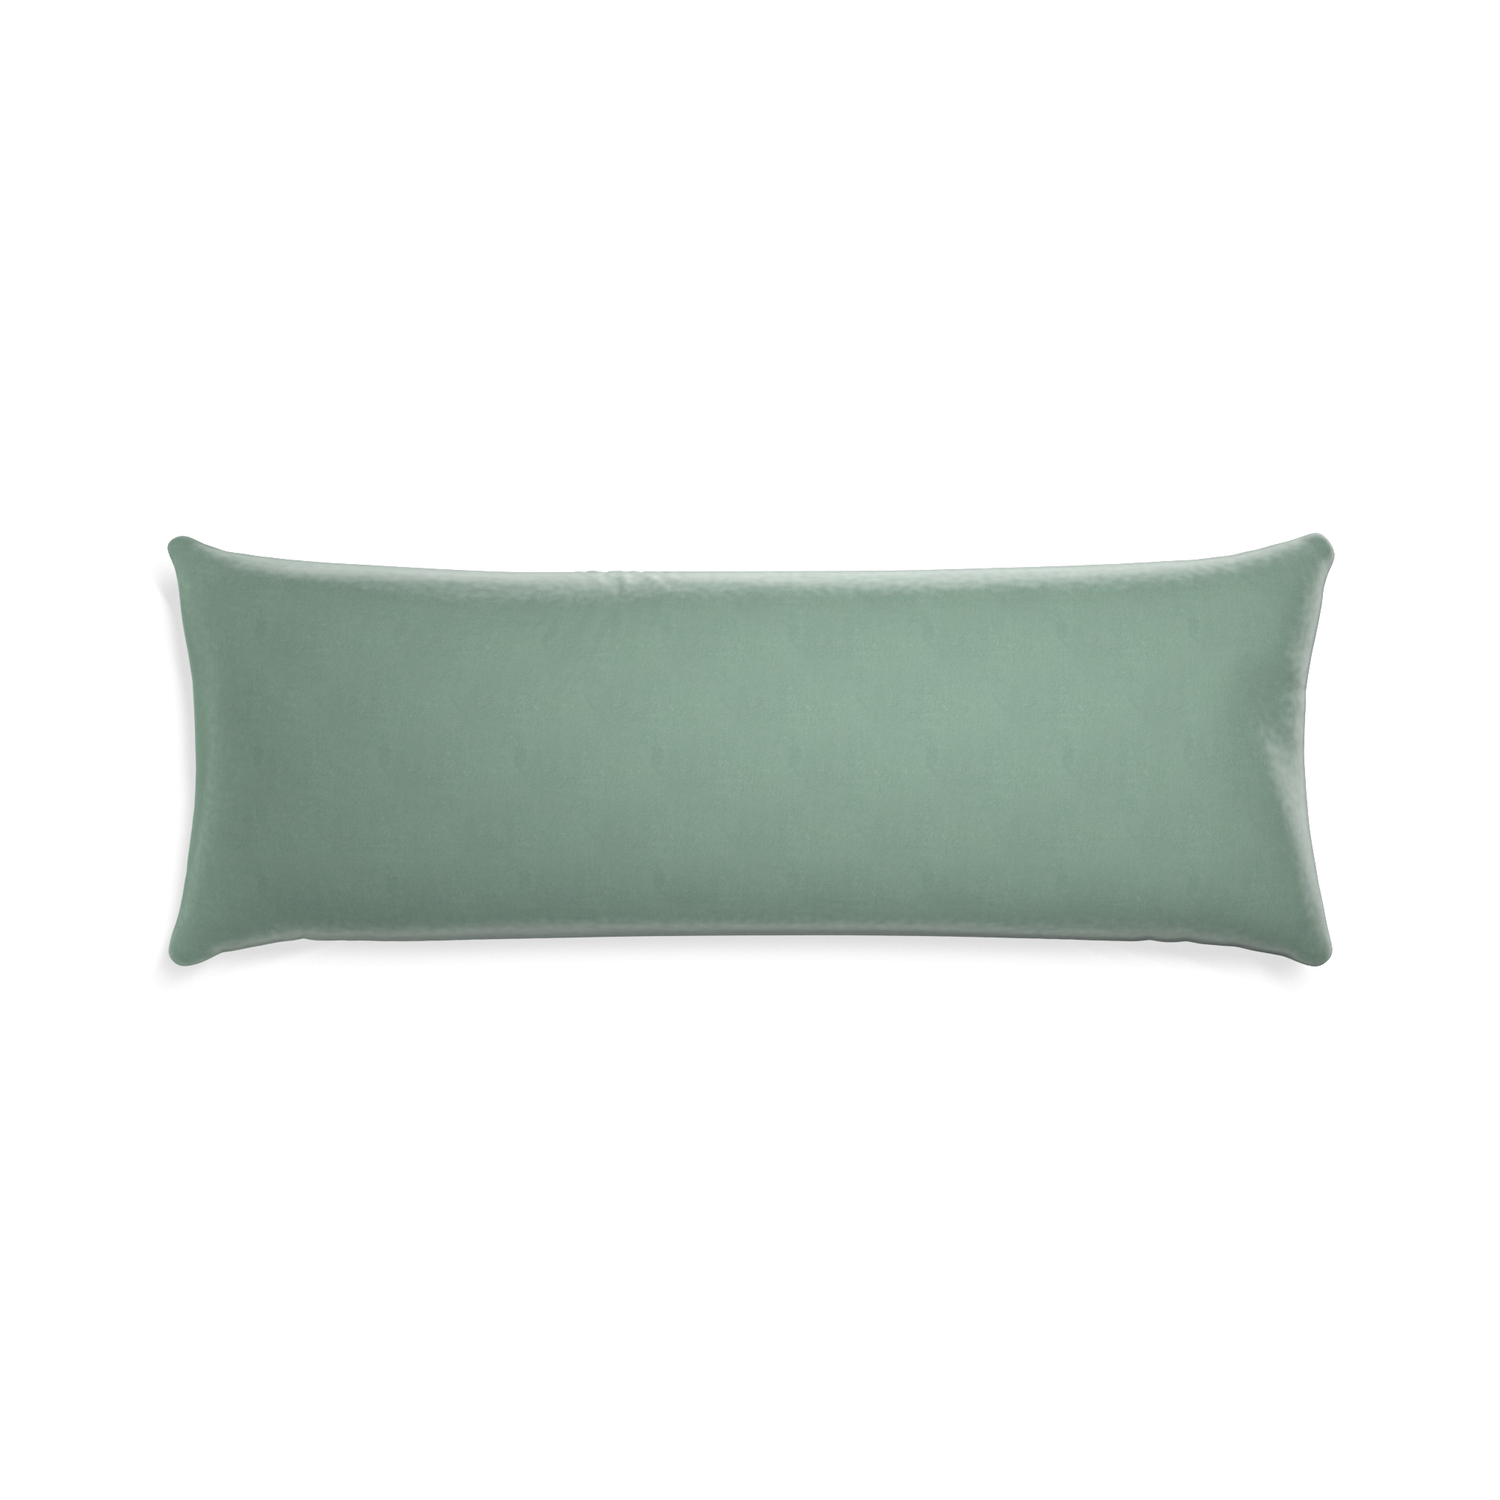 rectangle blue green velvet pillow